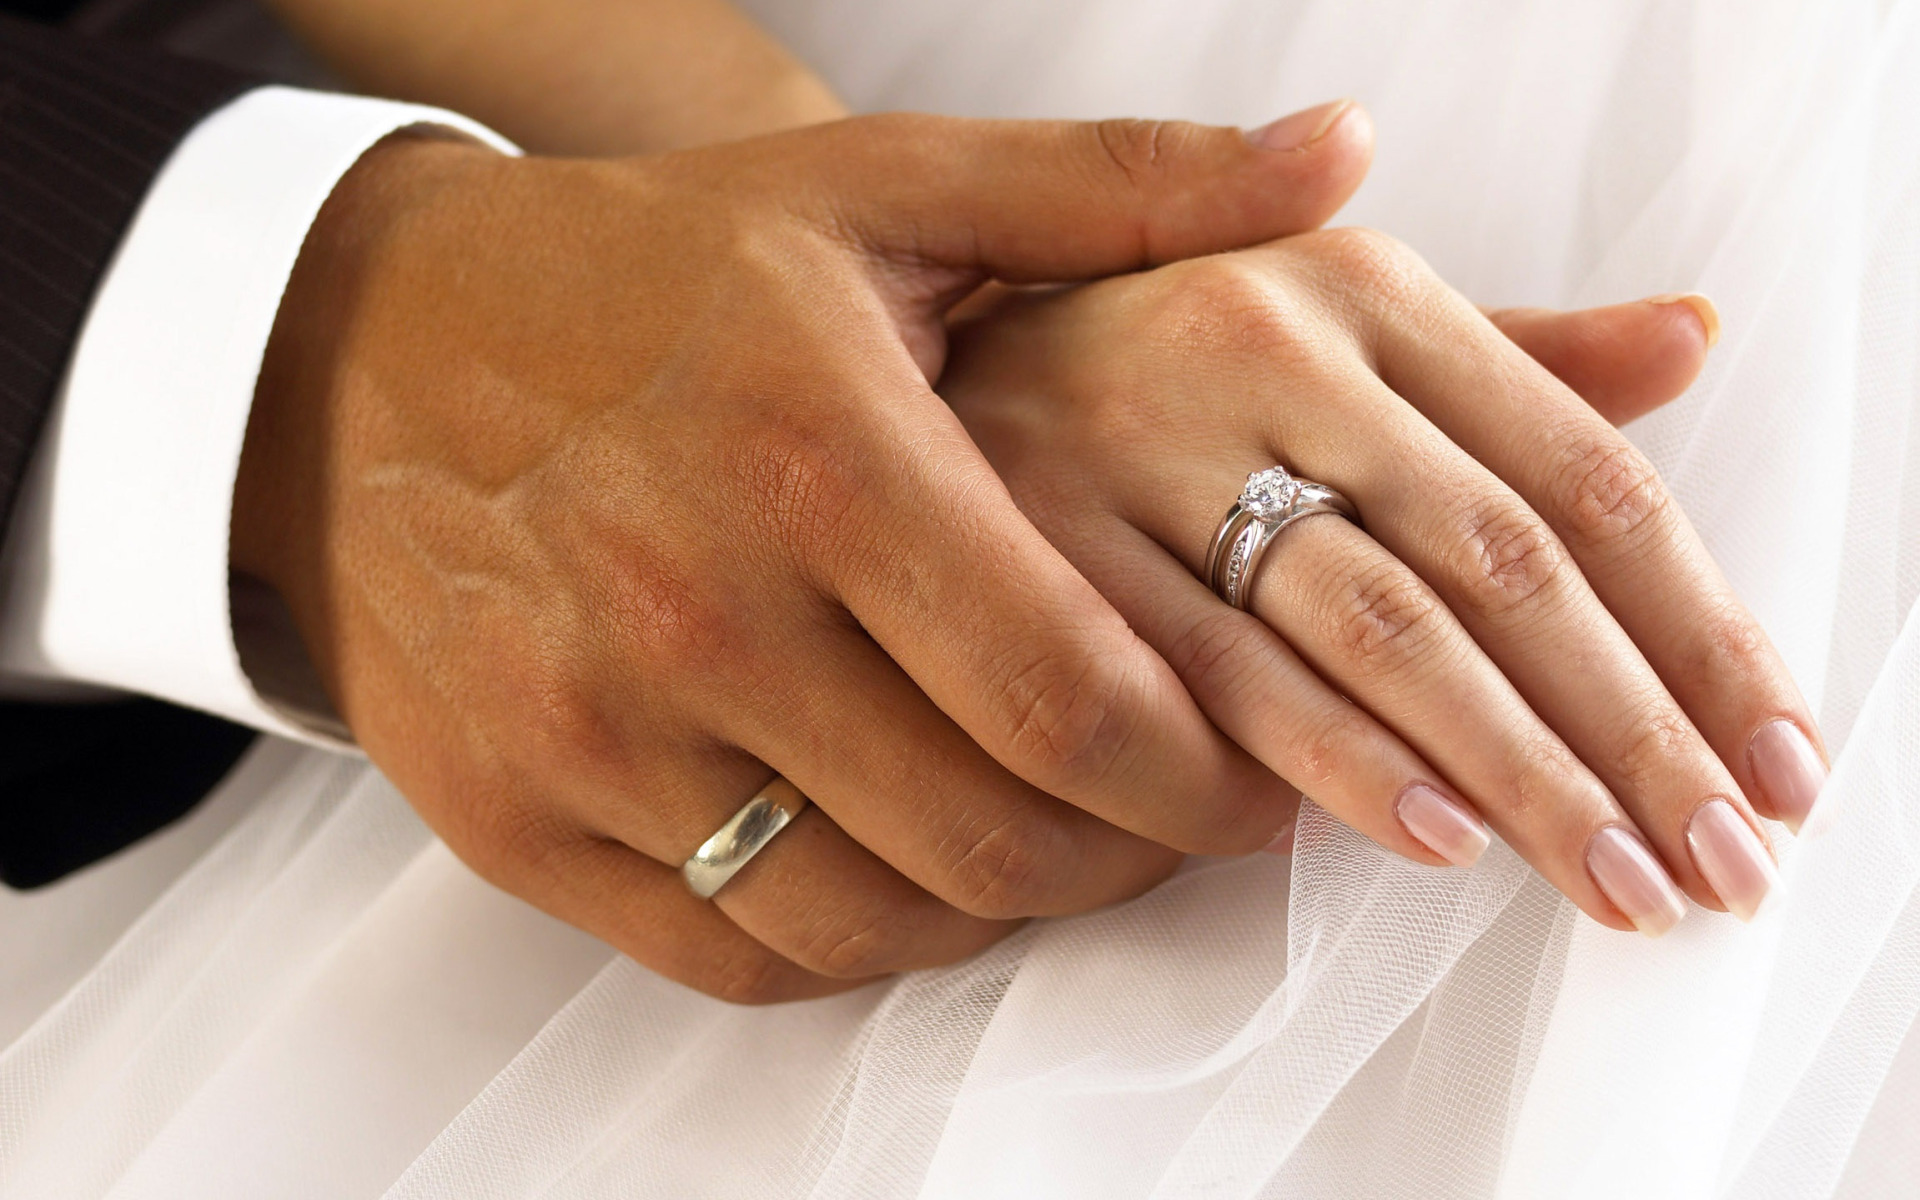 Кольцо замужества. Обручальные кольца на руках. Свадебные кольца на руках. Обручальное кольцо на пальце. Обручальное и помолвочное кольцо.